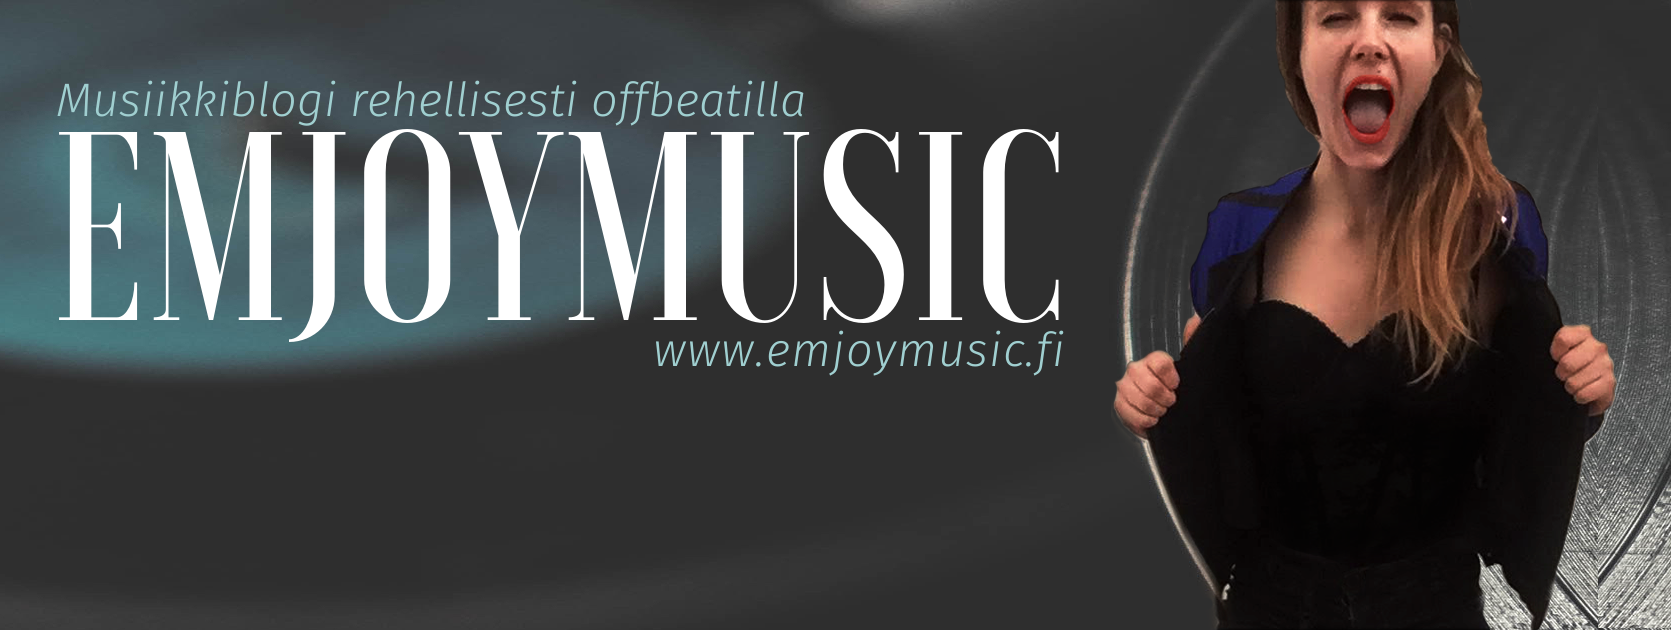 emjoymusic blogi rehellisesti offbeatilla musiikkiblogi sani valoranta emjoy 